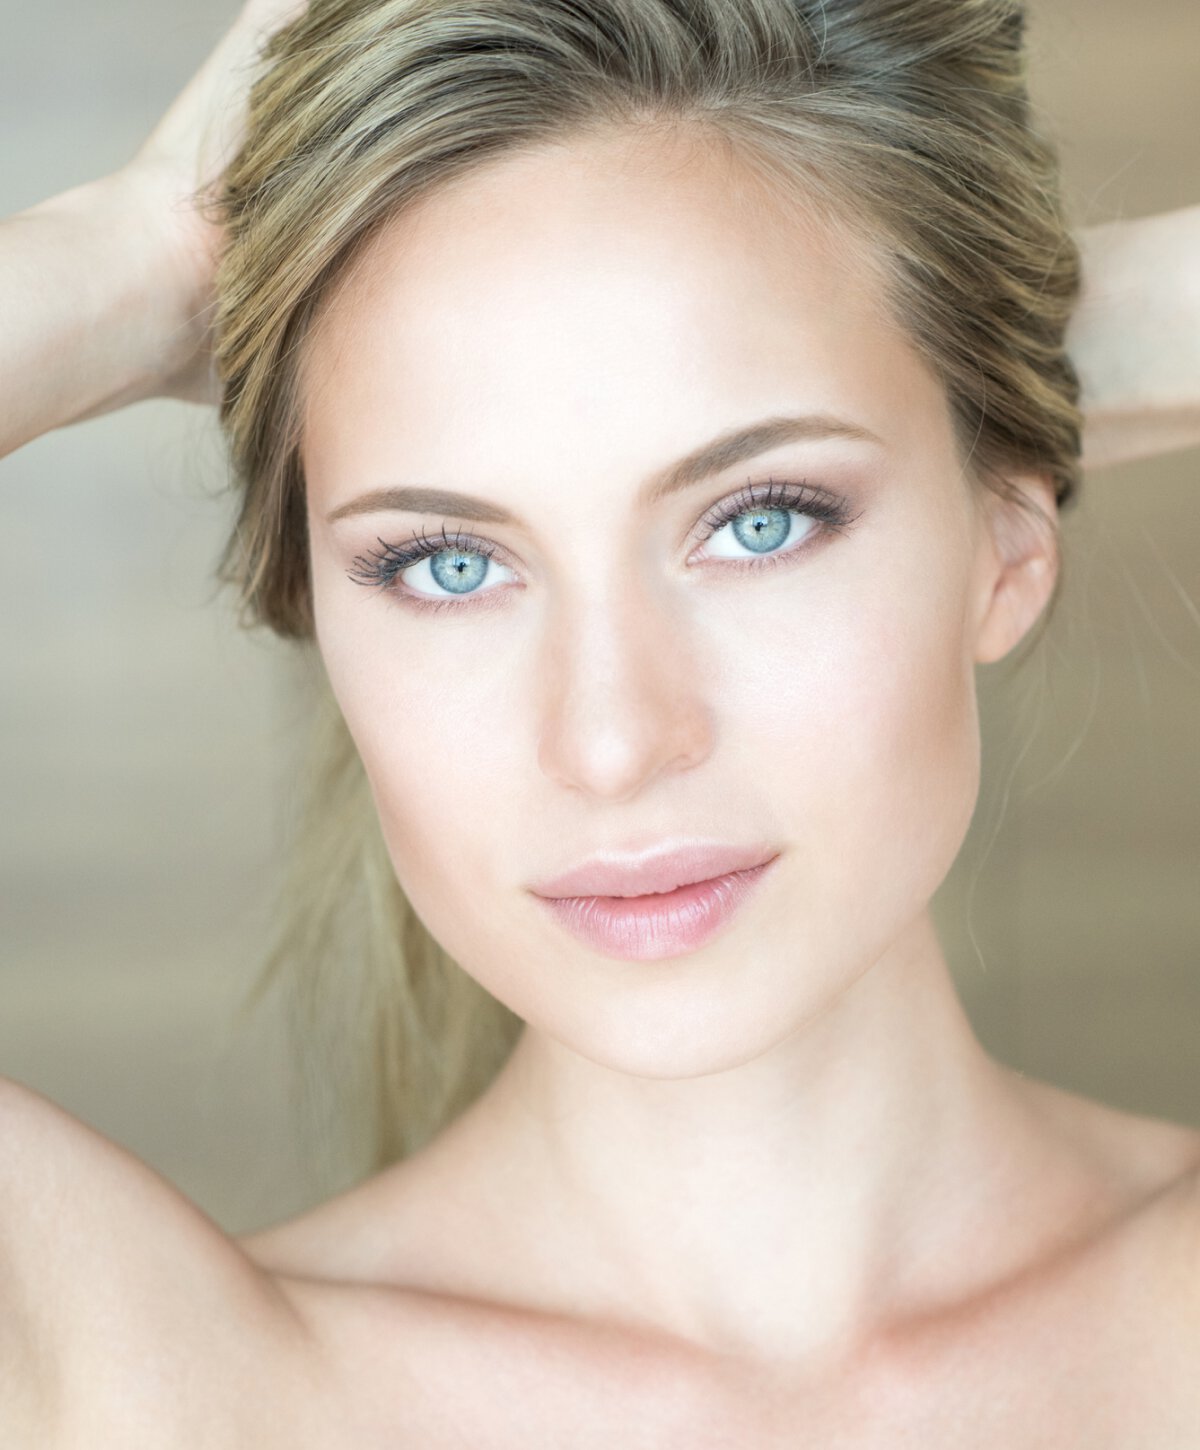 Carolina skin pen model with blonde hair